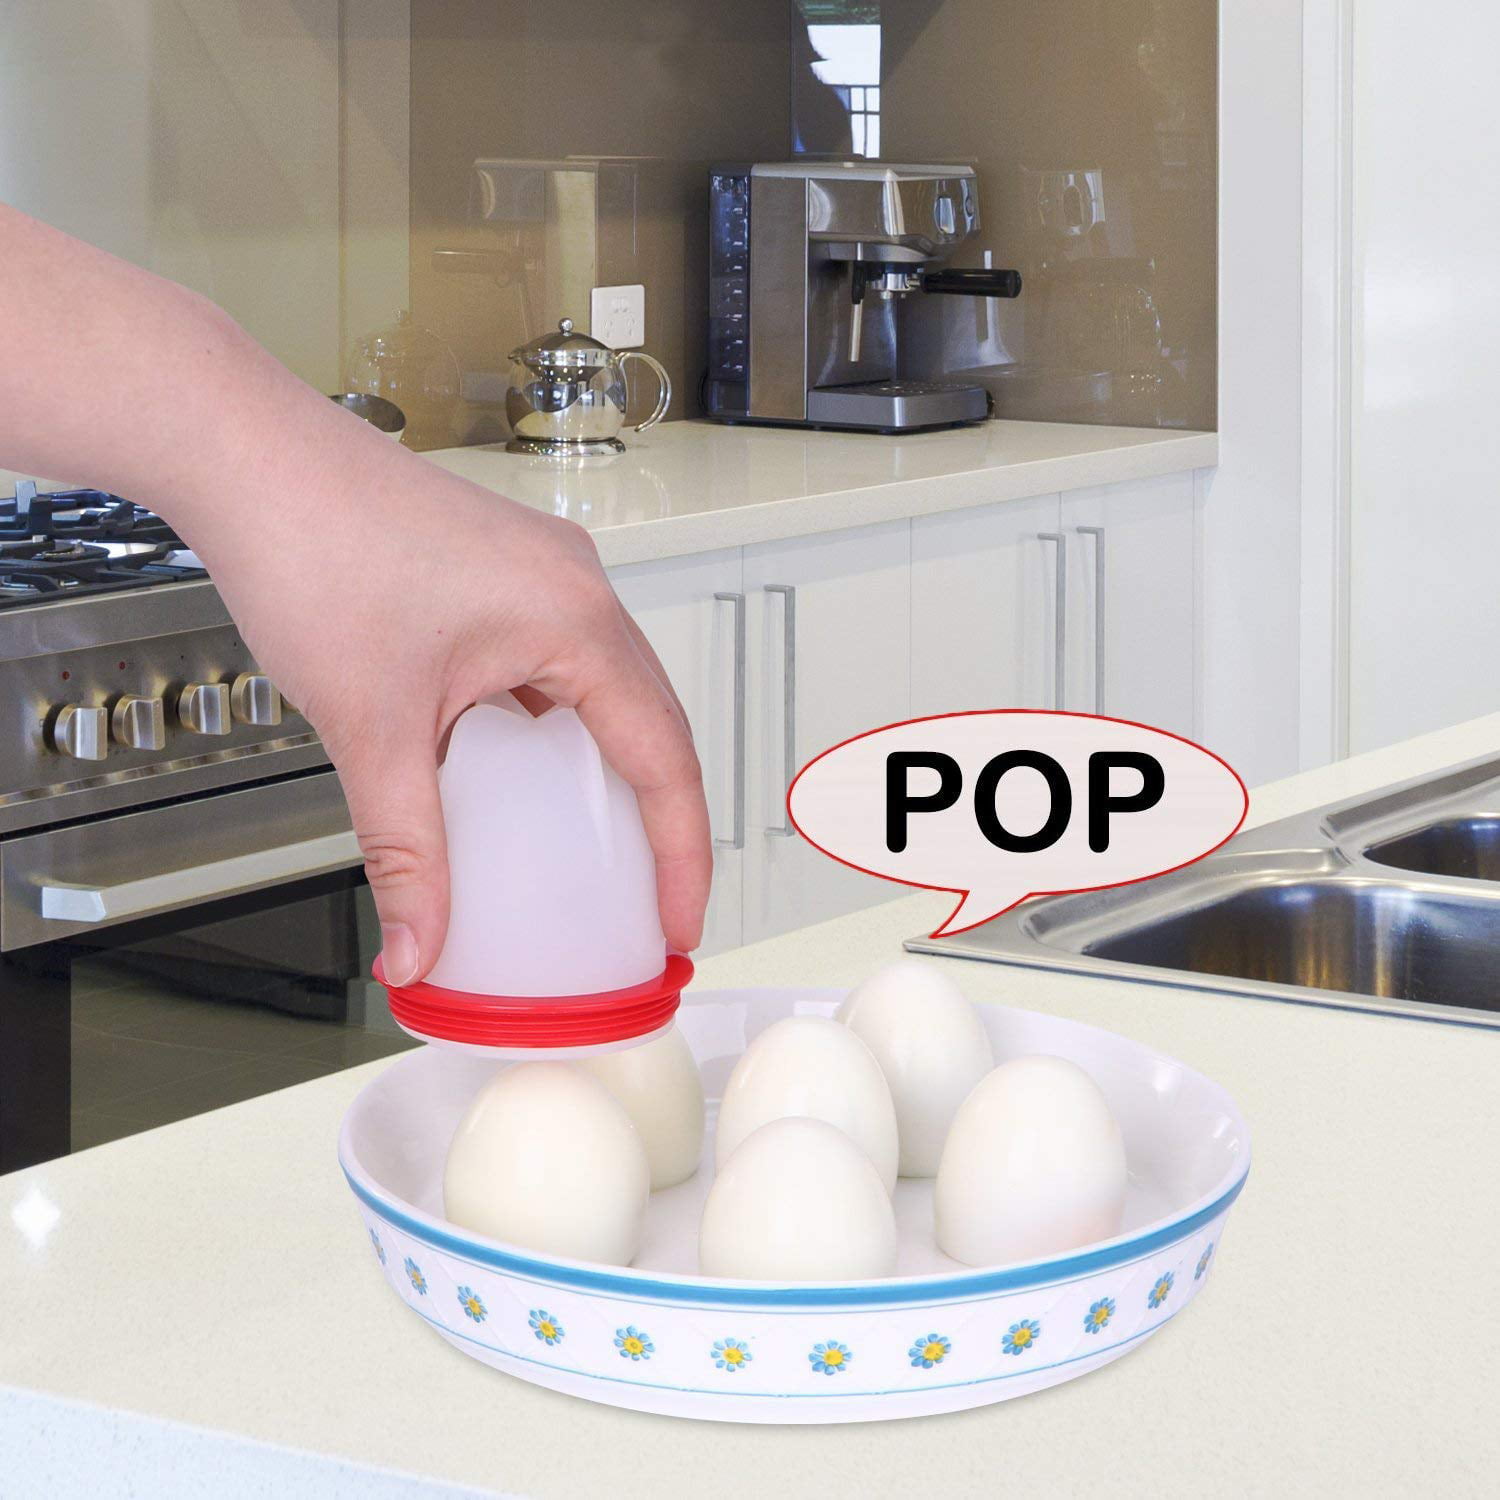 6pcs Set of Egglettes Maker Mold, Silicon Egg Boil Cup Hard Boiled Egg  Cooker Without Egg